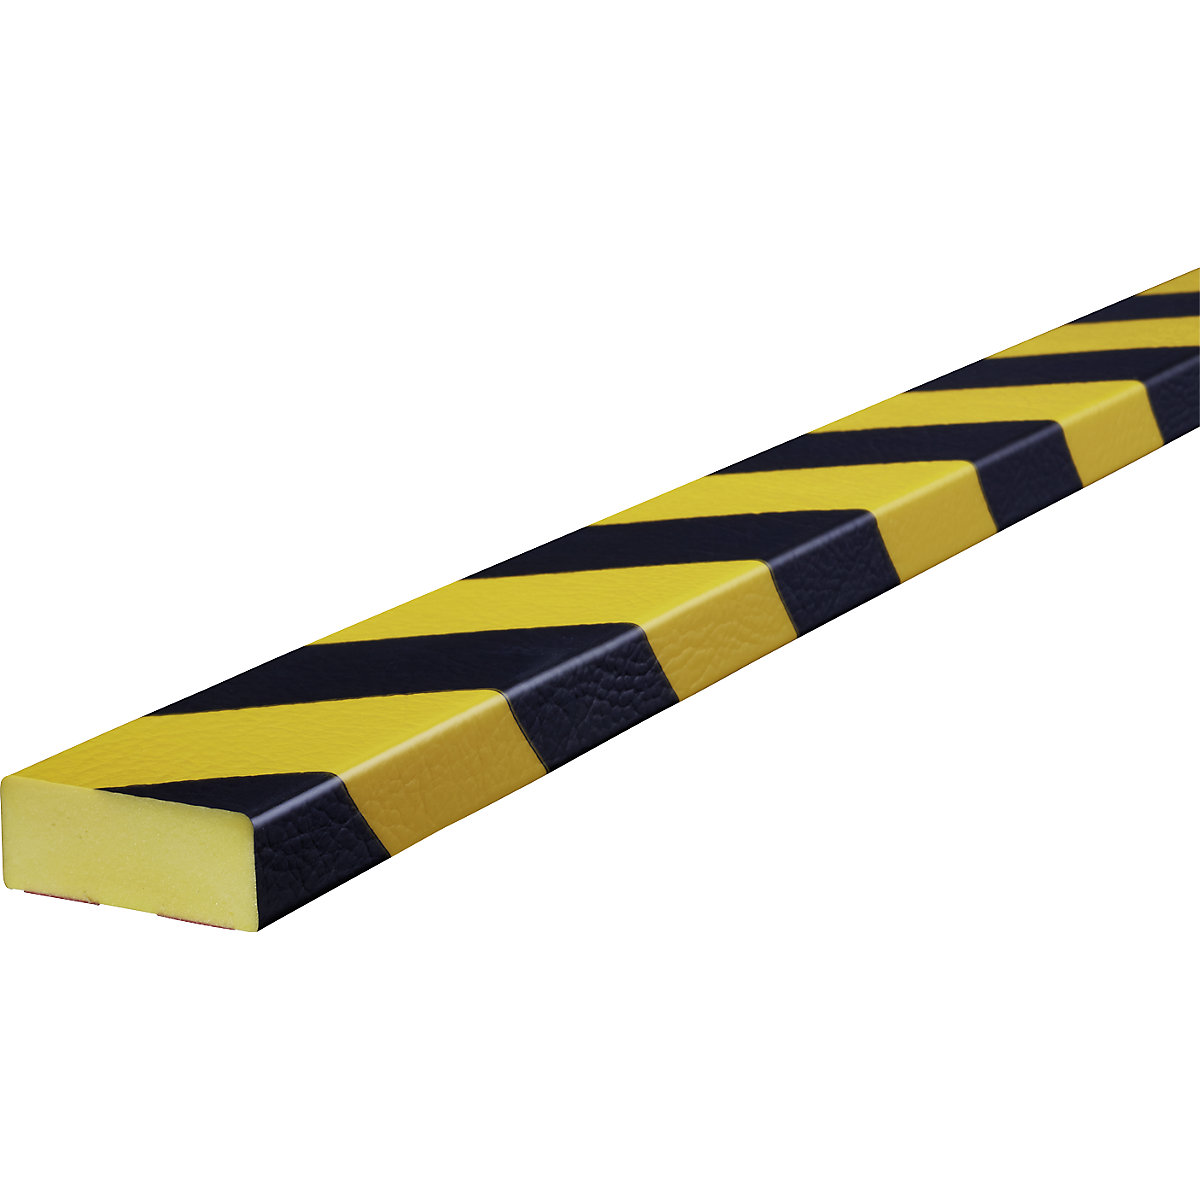 Knuffi®-oppervlaktebescherming – SHG, type D, 1 rol à 50 m, zwart/geel-17